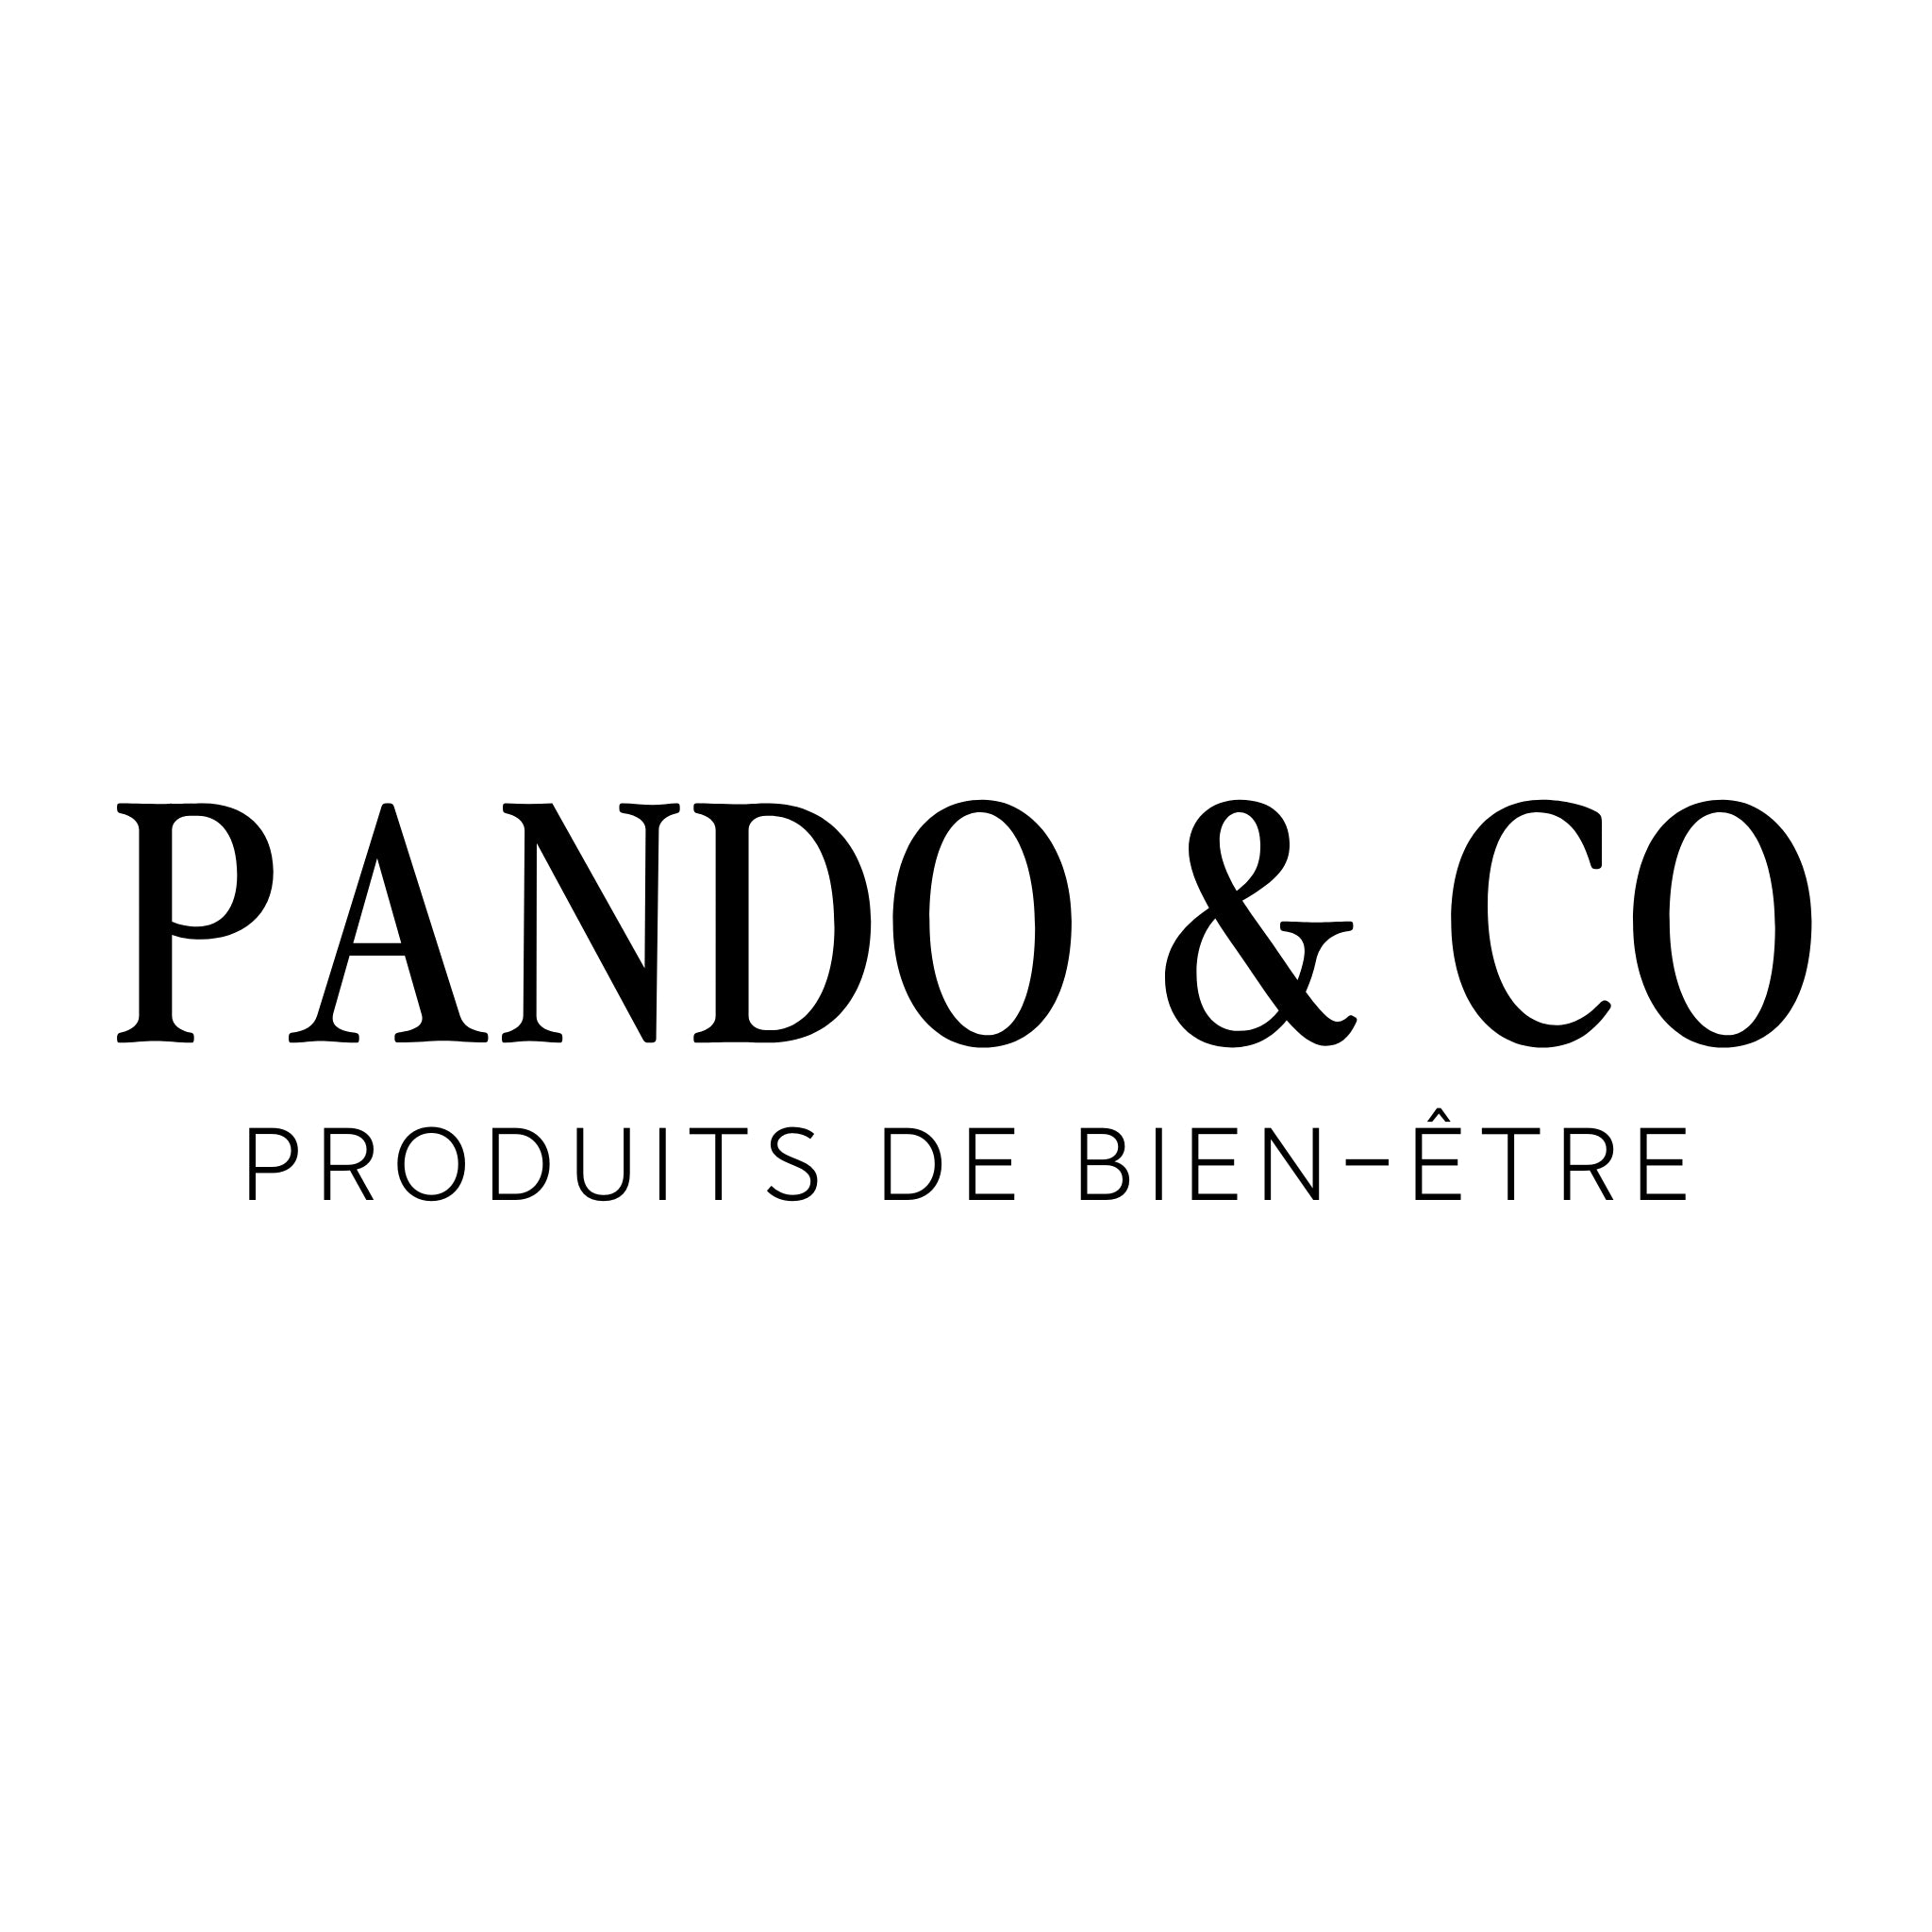 Pando & Co